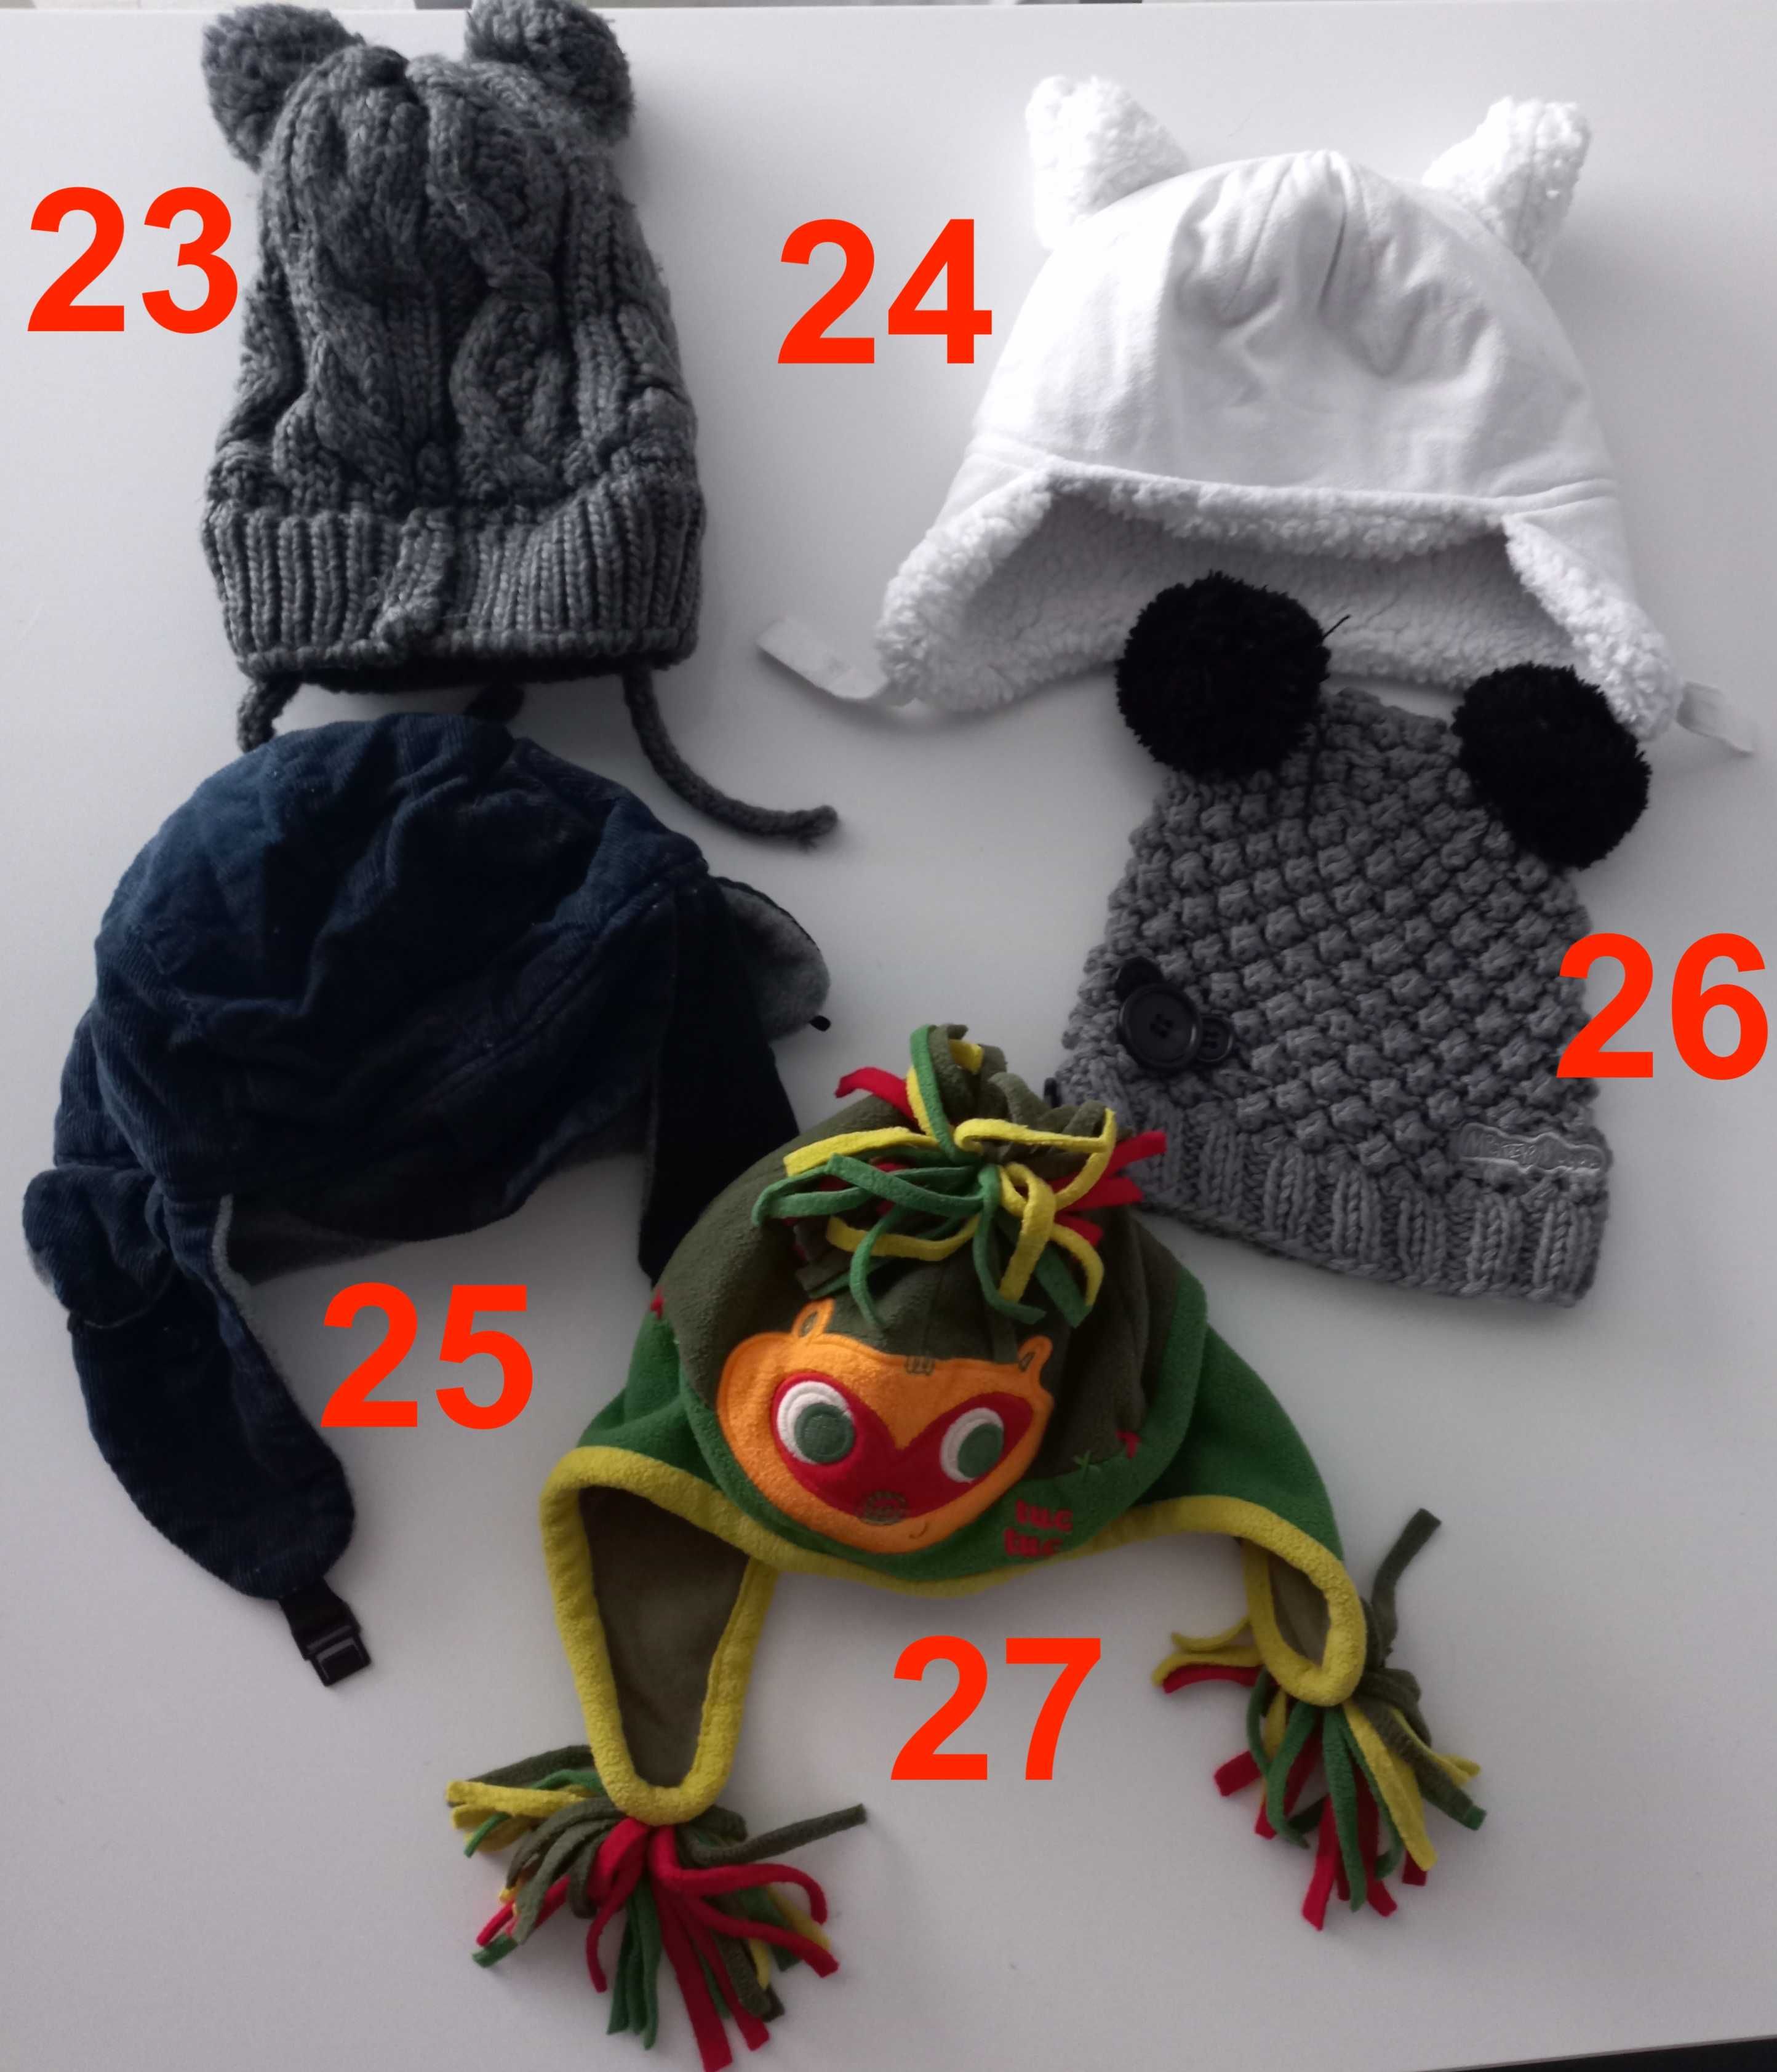 Gorros e chapéus de bebé / criança pequena (pack 3)